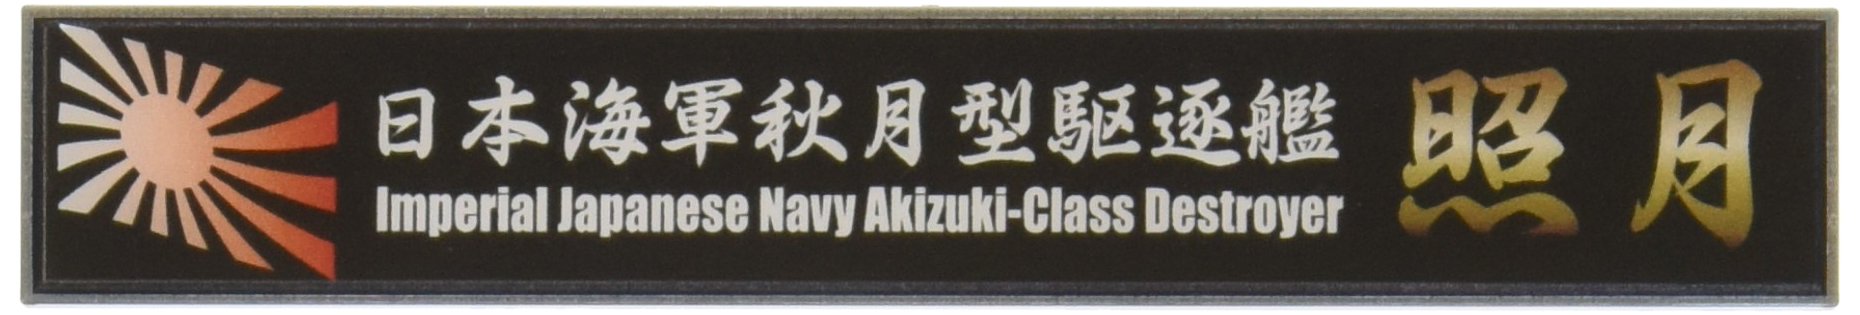 FUJIMI Ship Name Plate Series No.111 Ijn Akizuki-Klasse Zerstörer Teruzuki